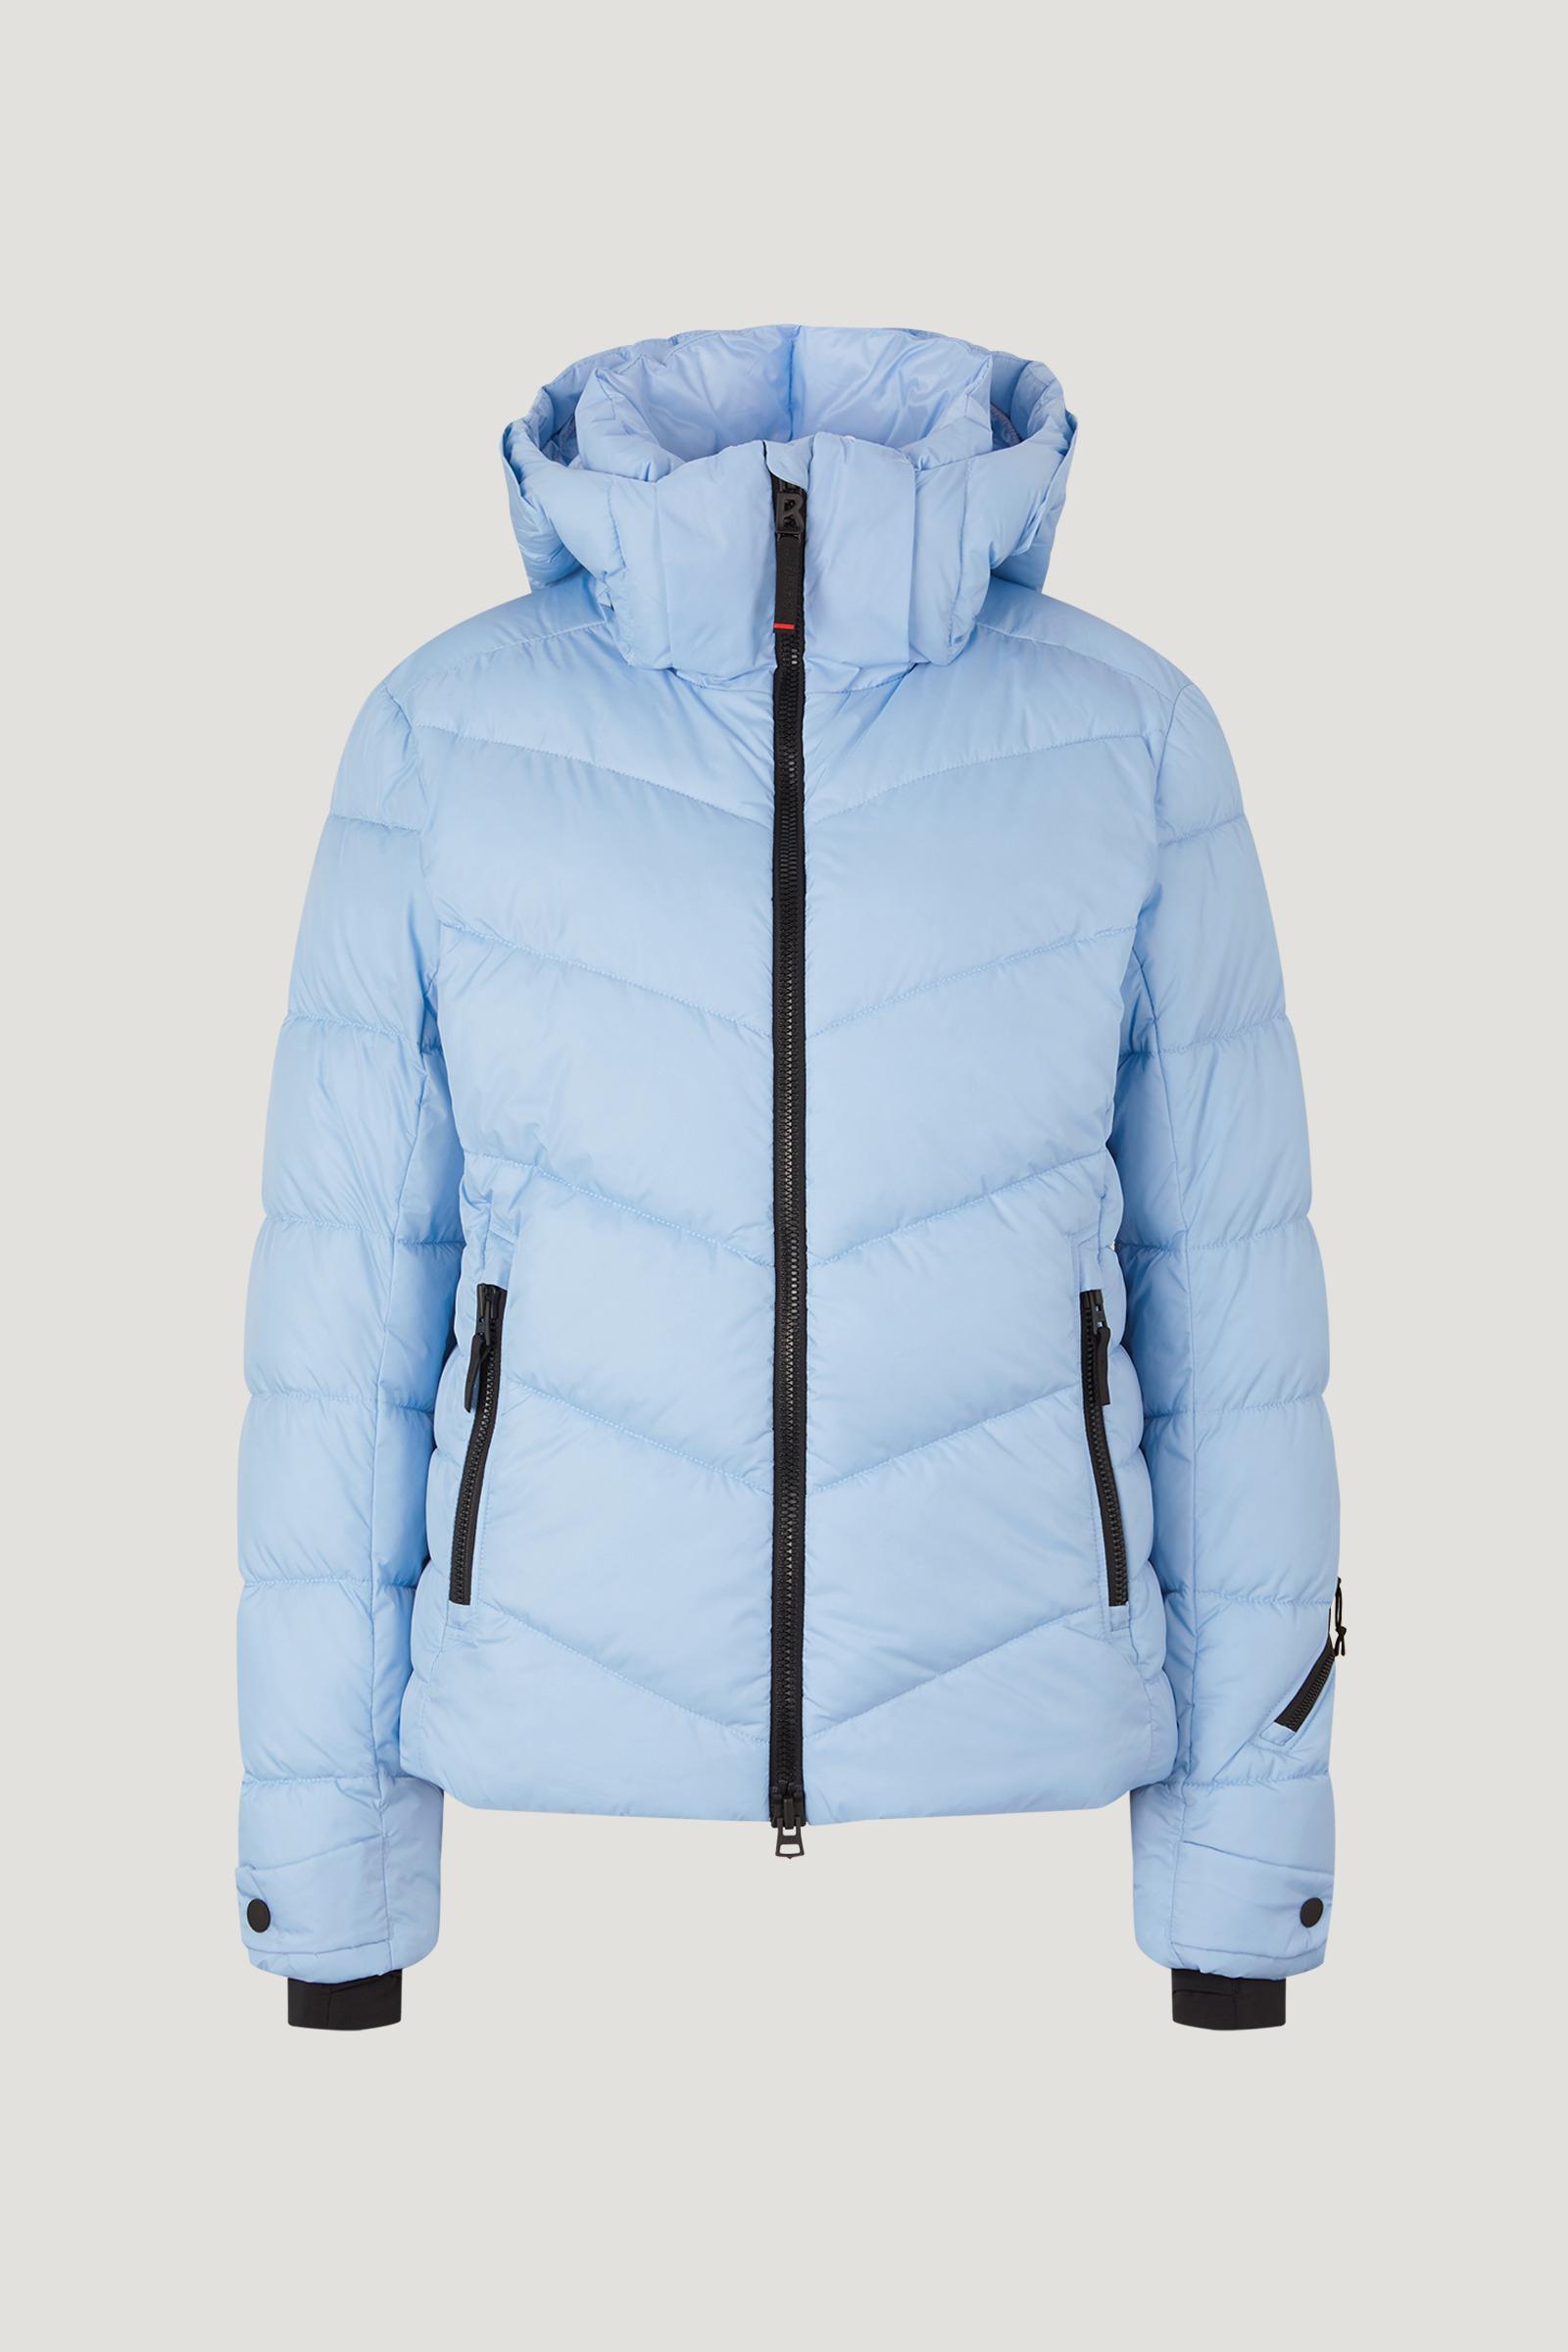 Bogner Saelly Ski Jacket in Blue | Lyst